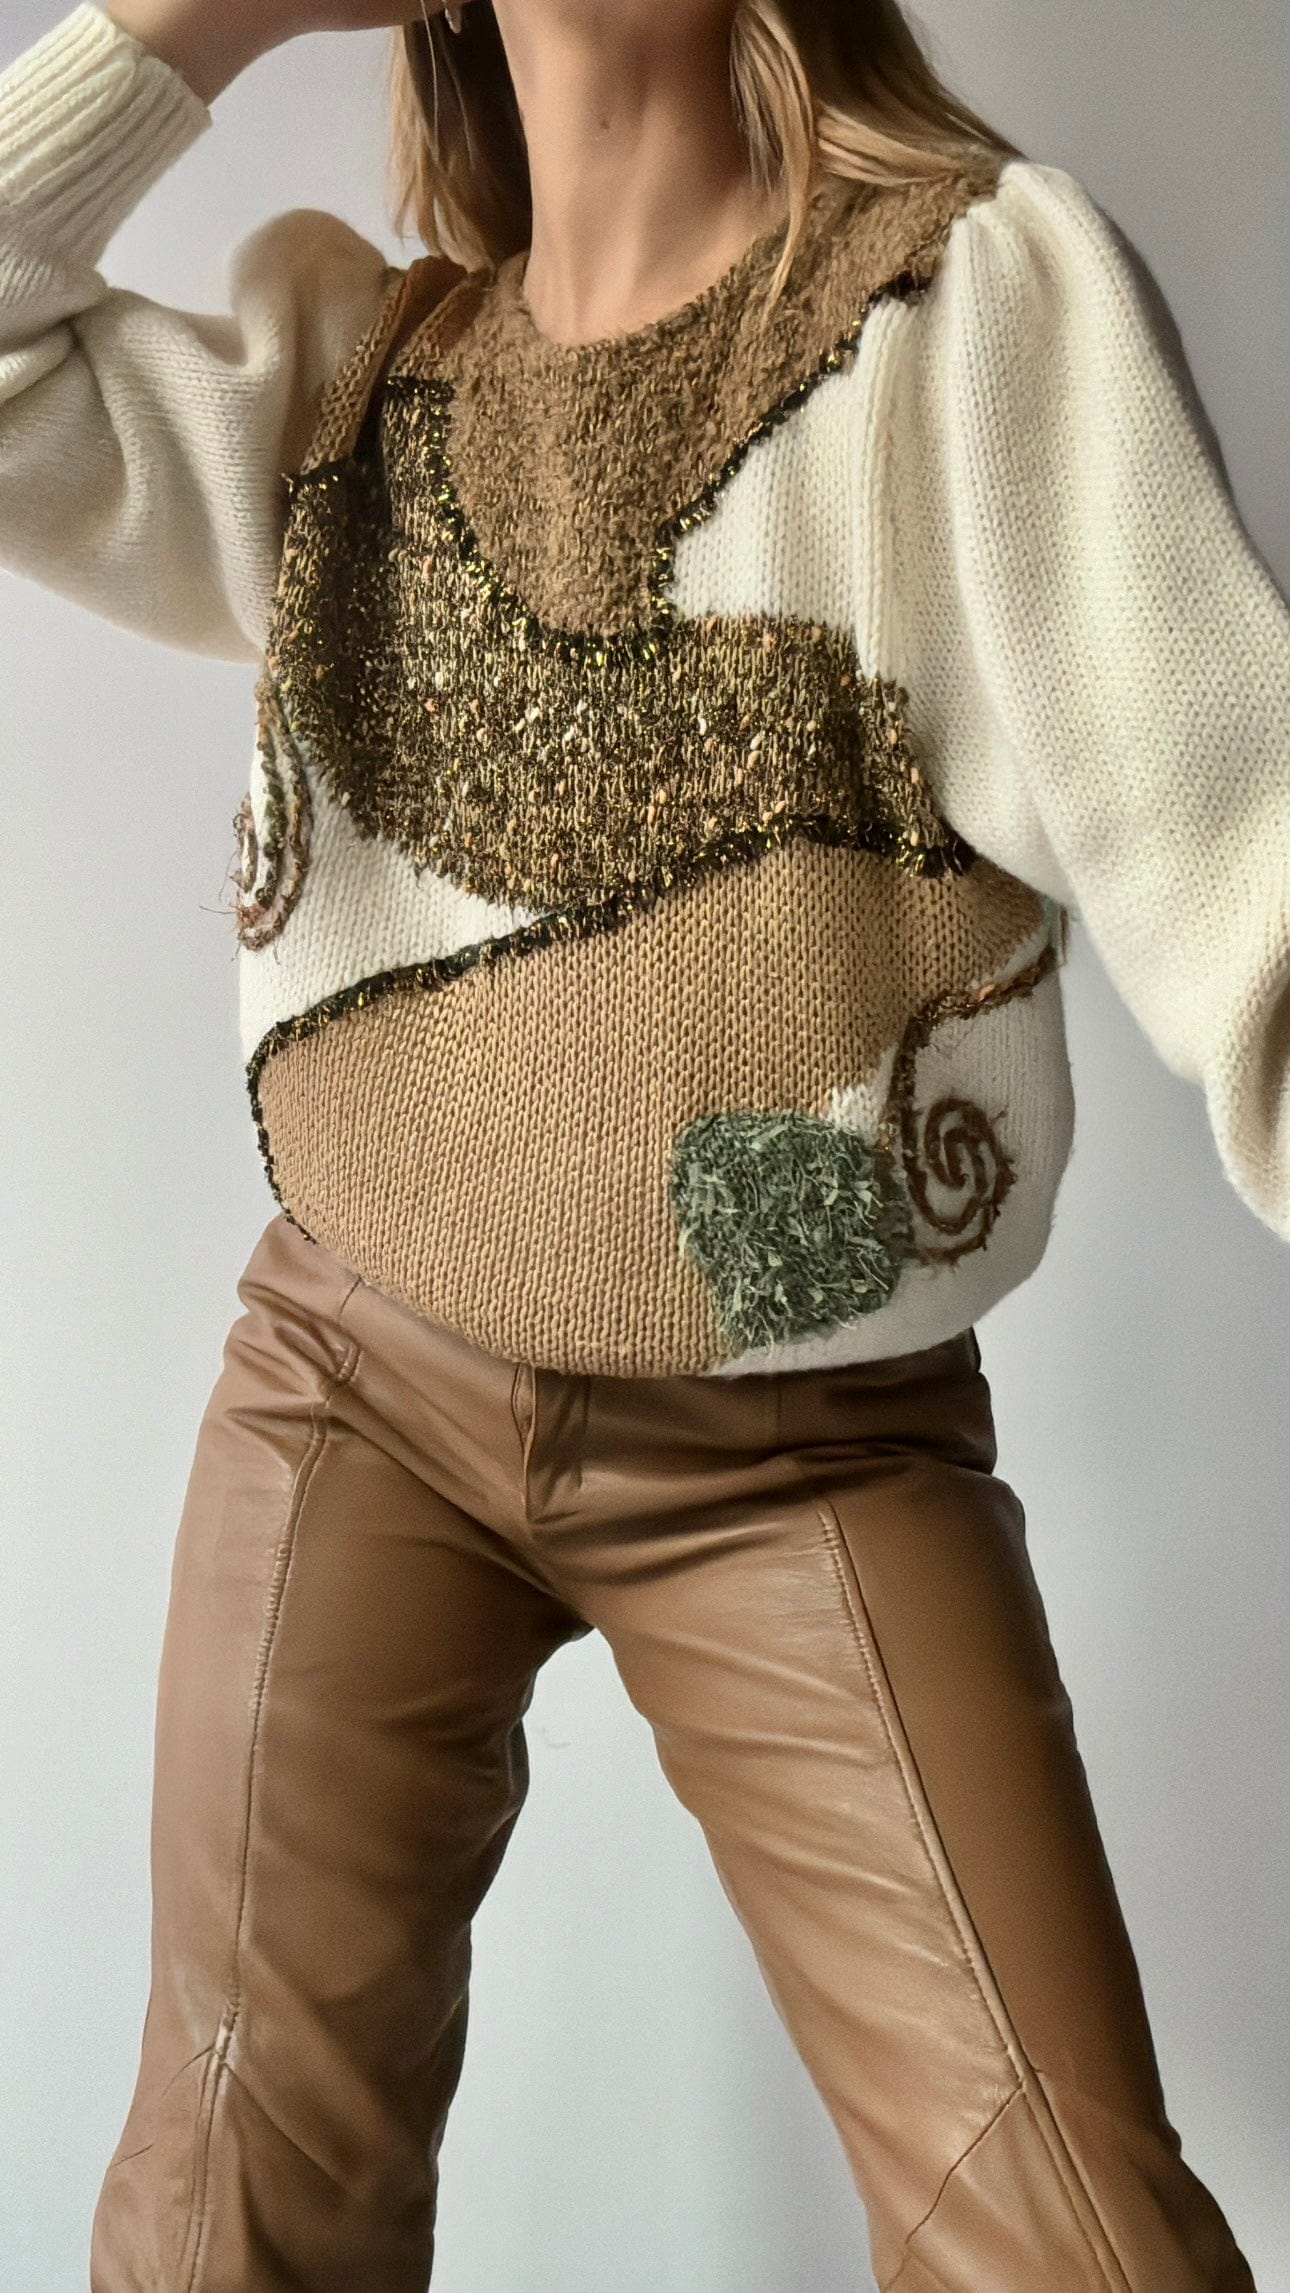 Sistergolden Golden Concept Vintage Knit